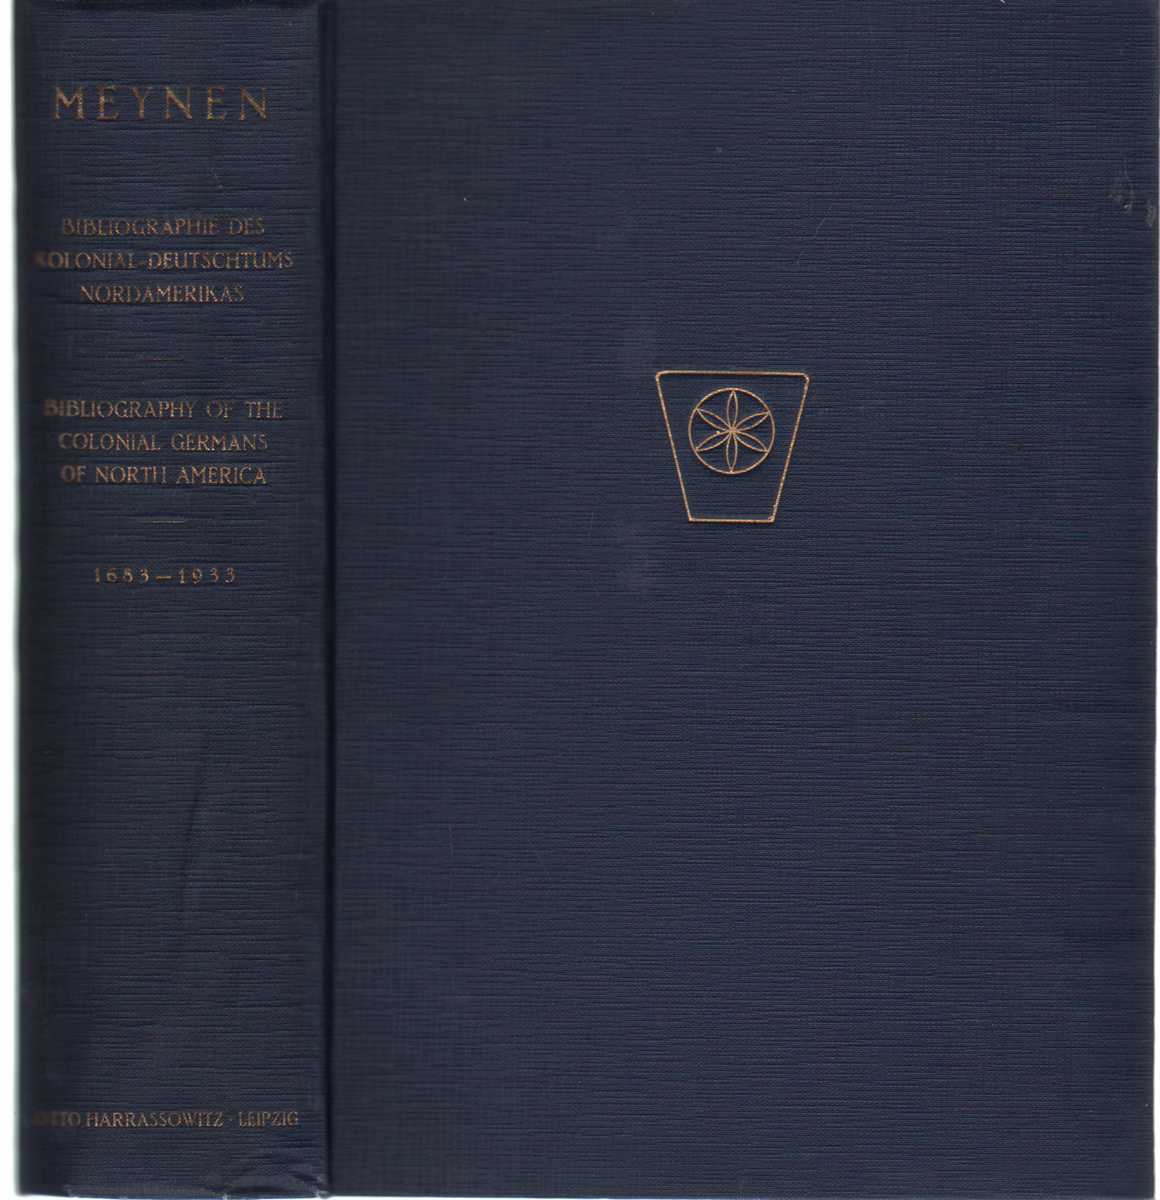 Meynen, Emil - BIBLIOGRAPHIE DES DEUTSCHTUMS DER KOLONIALZEITLICHEN EINWANDERUNG IN NORDAMERIKA. INSBESONDERE DER PENNSYLVANIEN-DEUTSCHEN UND IHRER NACHKOMMEN 1683-1933. Bibliography on German Settlements in Colonial North America, Especially on the Pennsylvania Germans and Their Descentants 1683 - 1933